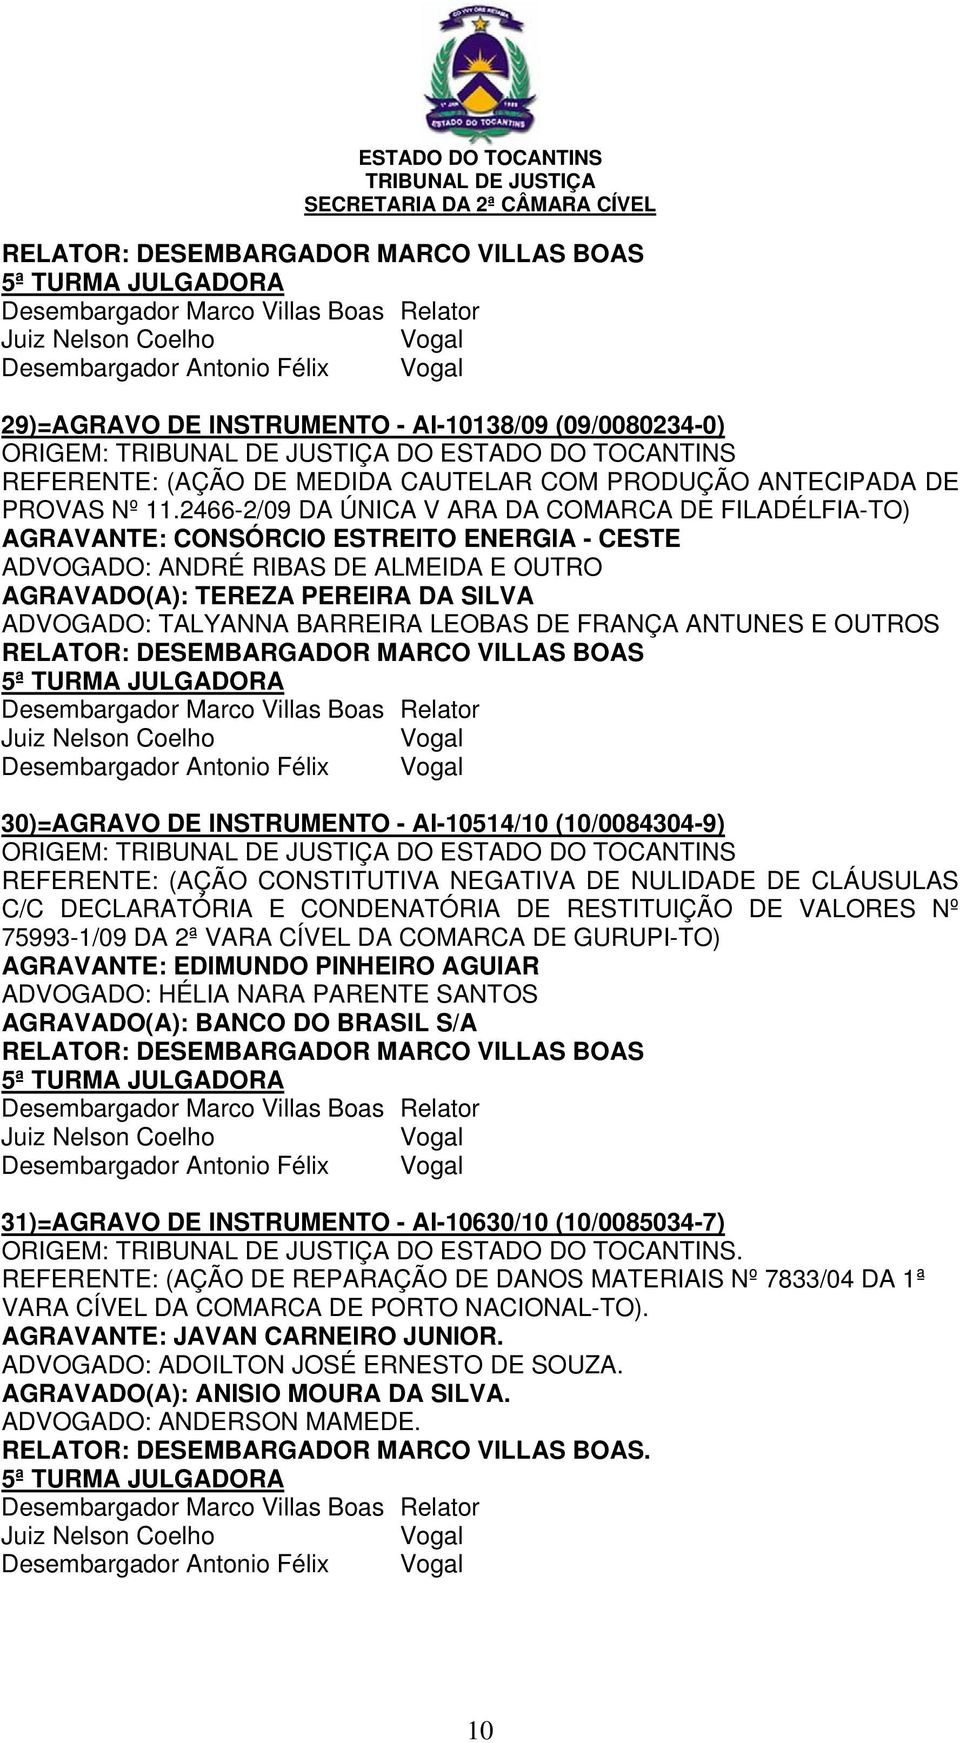 (10/0084304-9) REFERENTE: (AÇÃO CONSTITUTIVA NEGATIVA DE NULIDADE DE CLÁUSULAS C/C DECLARATÓRIA E CONDENATÓRIA DE RESTITUIÇÃO DE VALORES Nº 75993-1/09 DA 2ª VARA CÍVEL DA COMARCA DE GURUPI-TO)